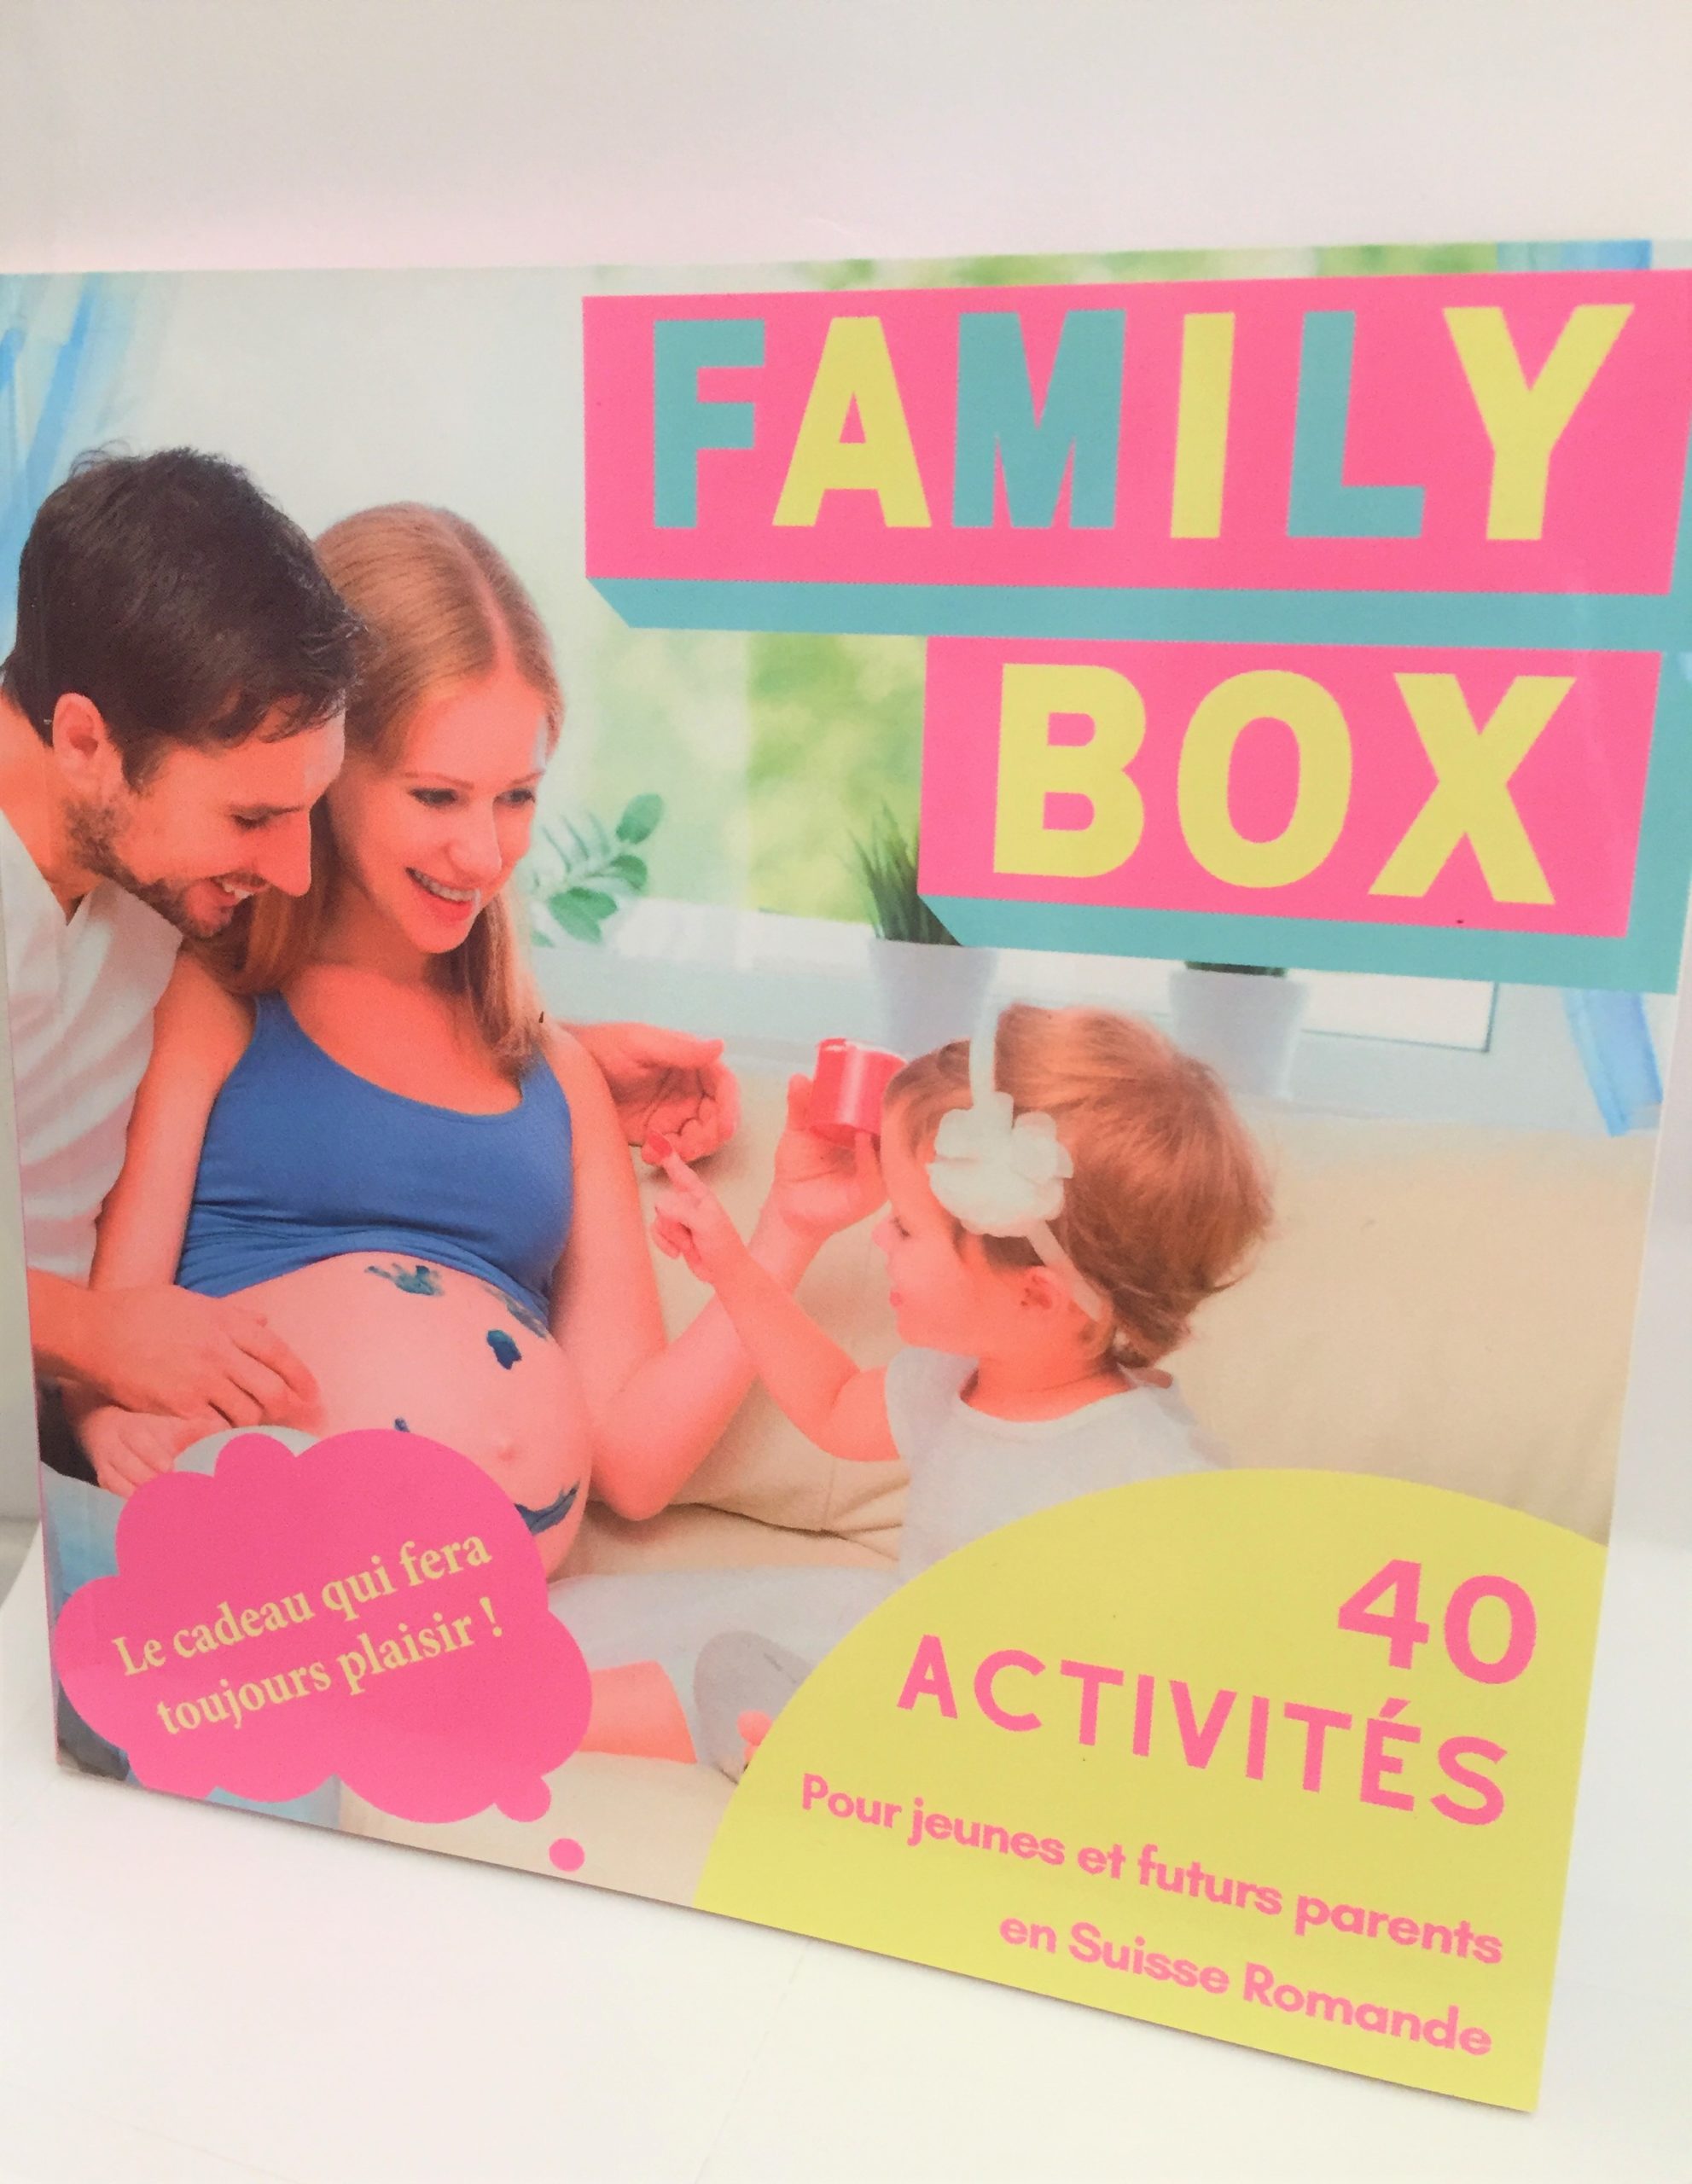 Family Box : L'expérience inoubliable pour les futurs parents